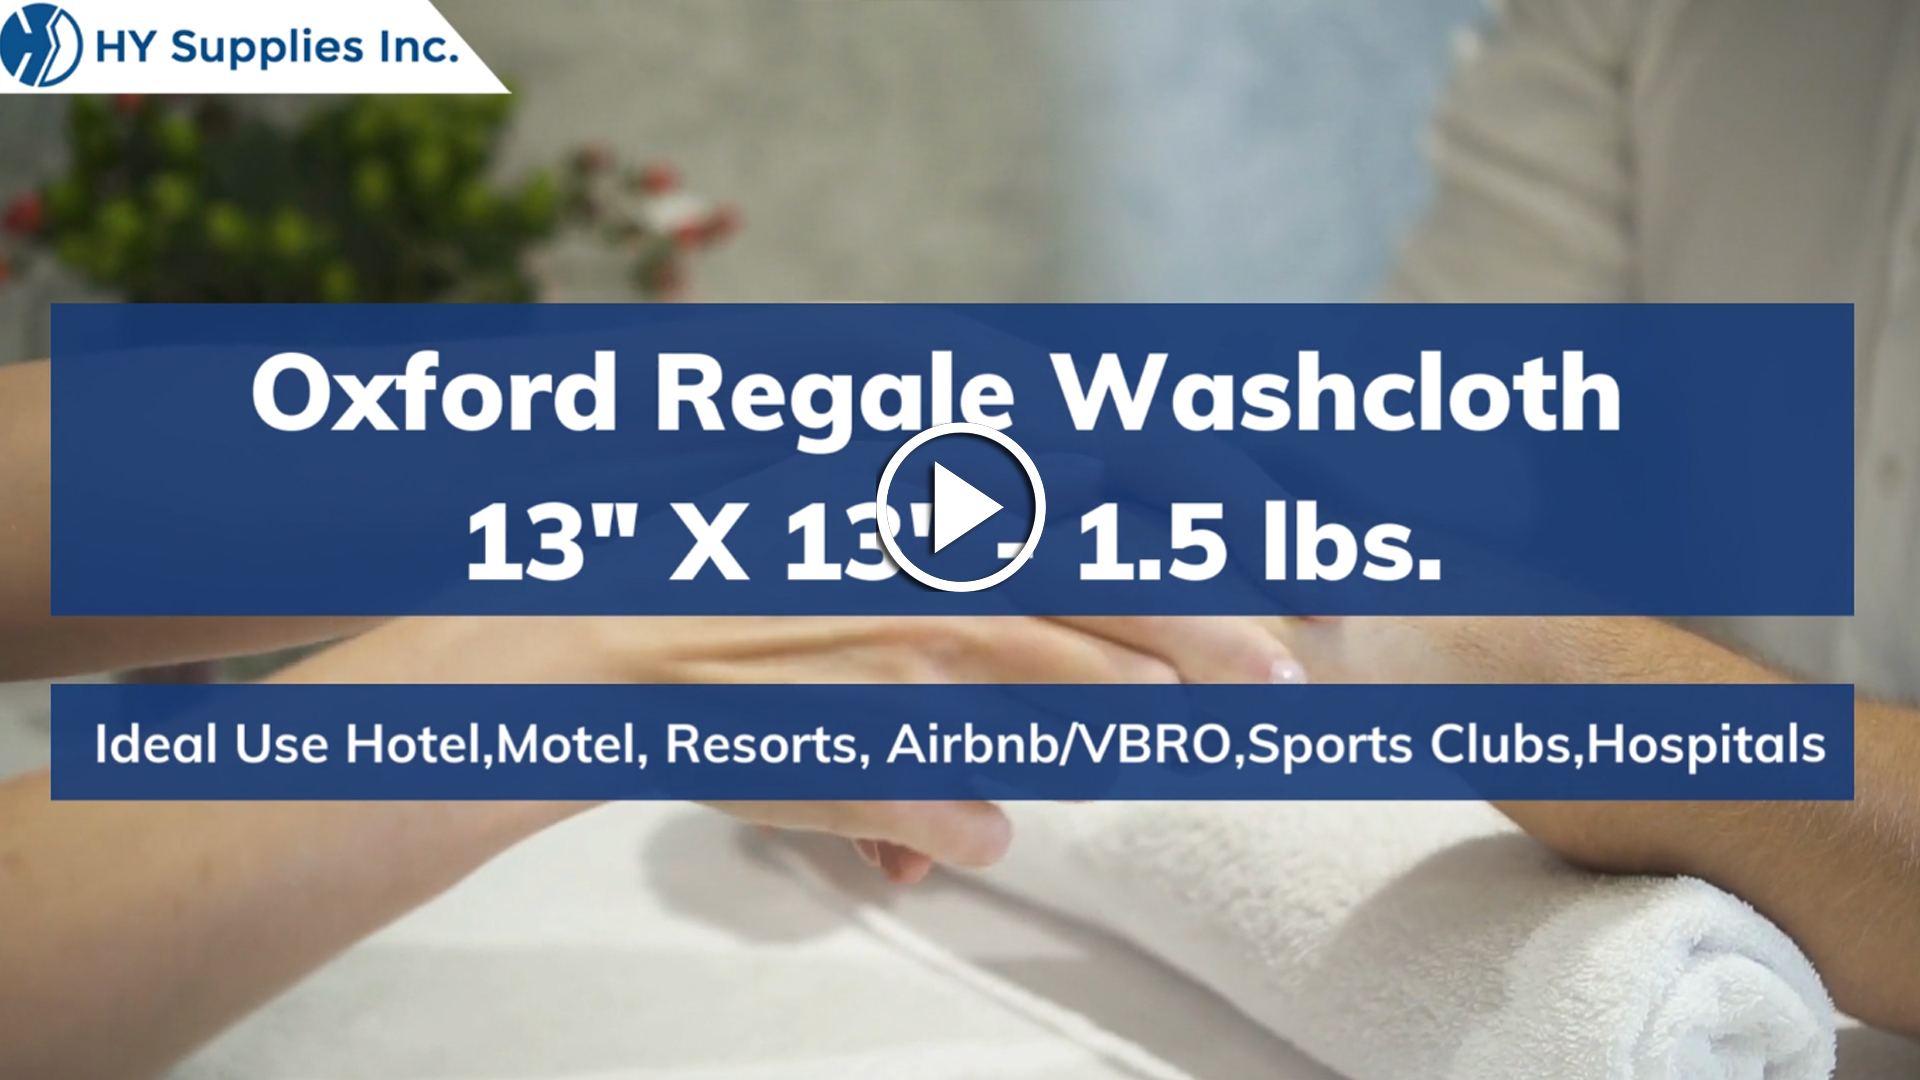 Oxford Regale Washcloth - 13" X 13"- 1.5 lbs.